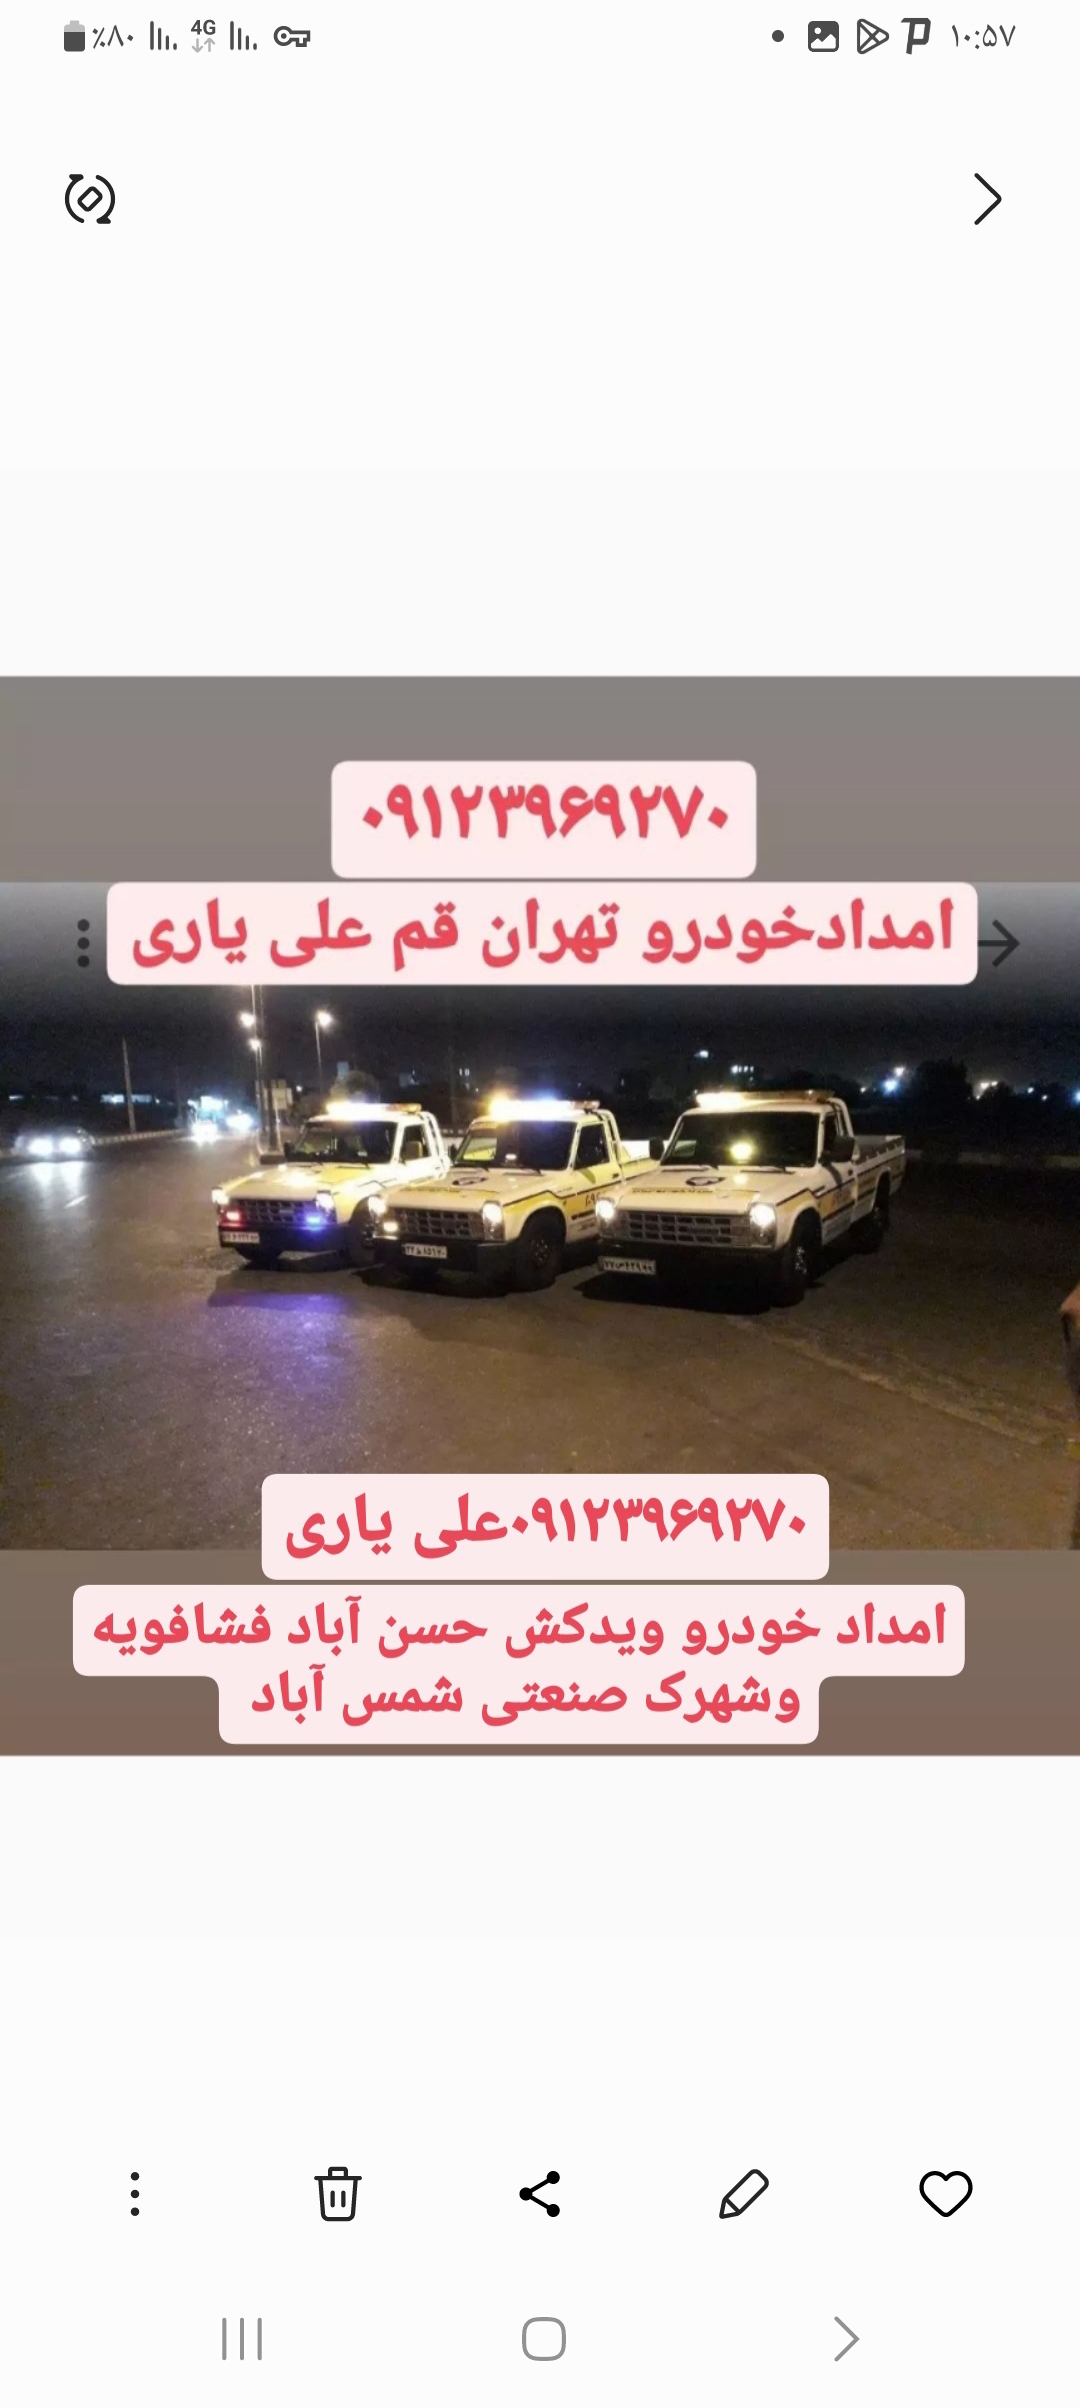 امداد خودرو ویدکش ندامتگاه تهران بزرگ حسن آباد فشافویه